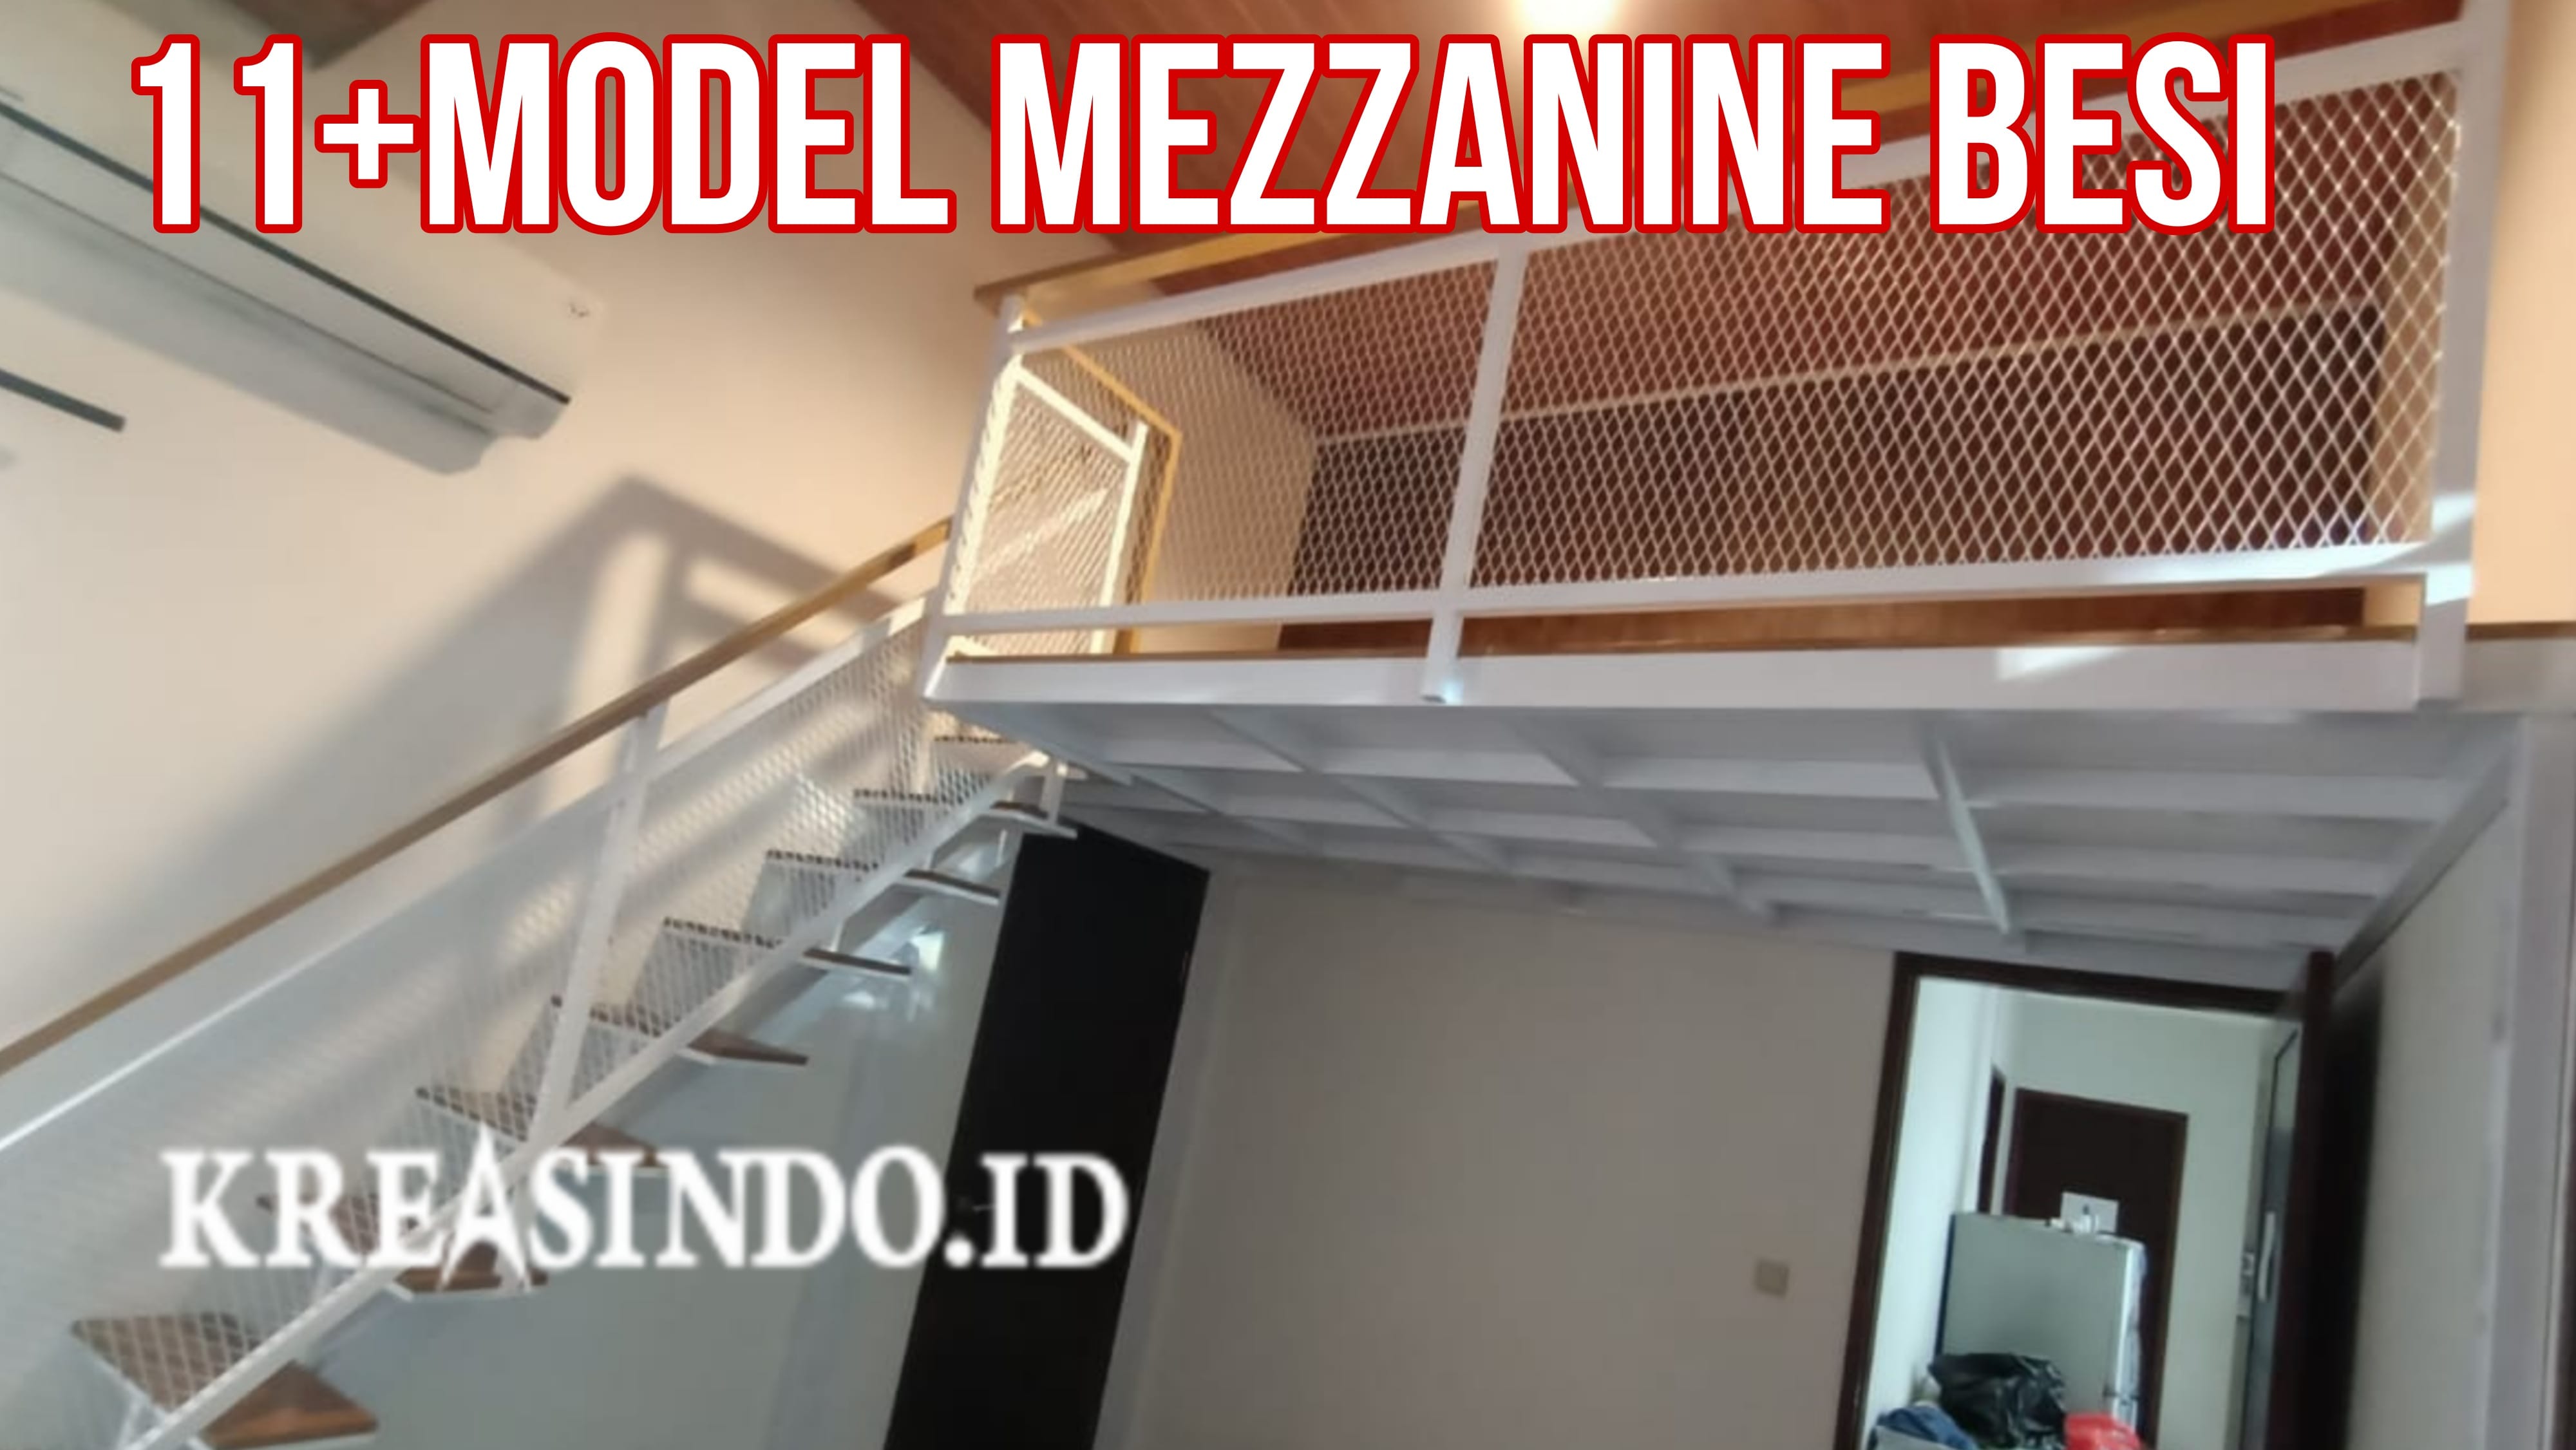 11+ Model Mezzanine Besi atau Panggung Terlengkap dan Terbagus